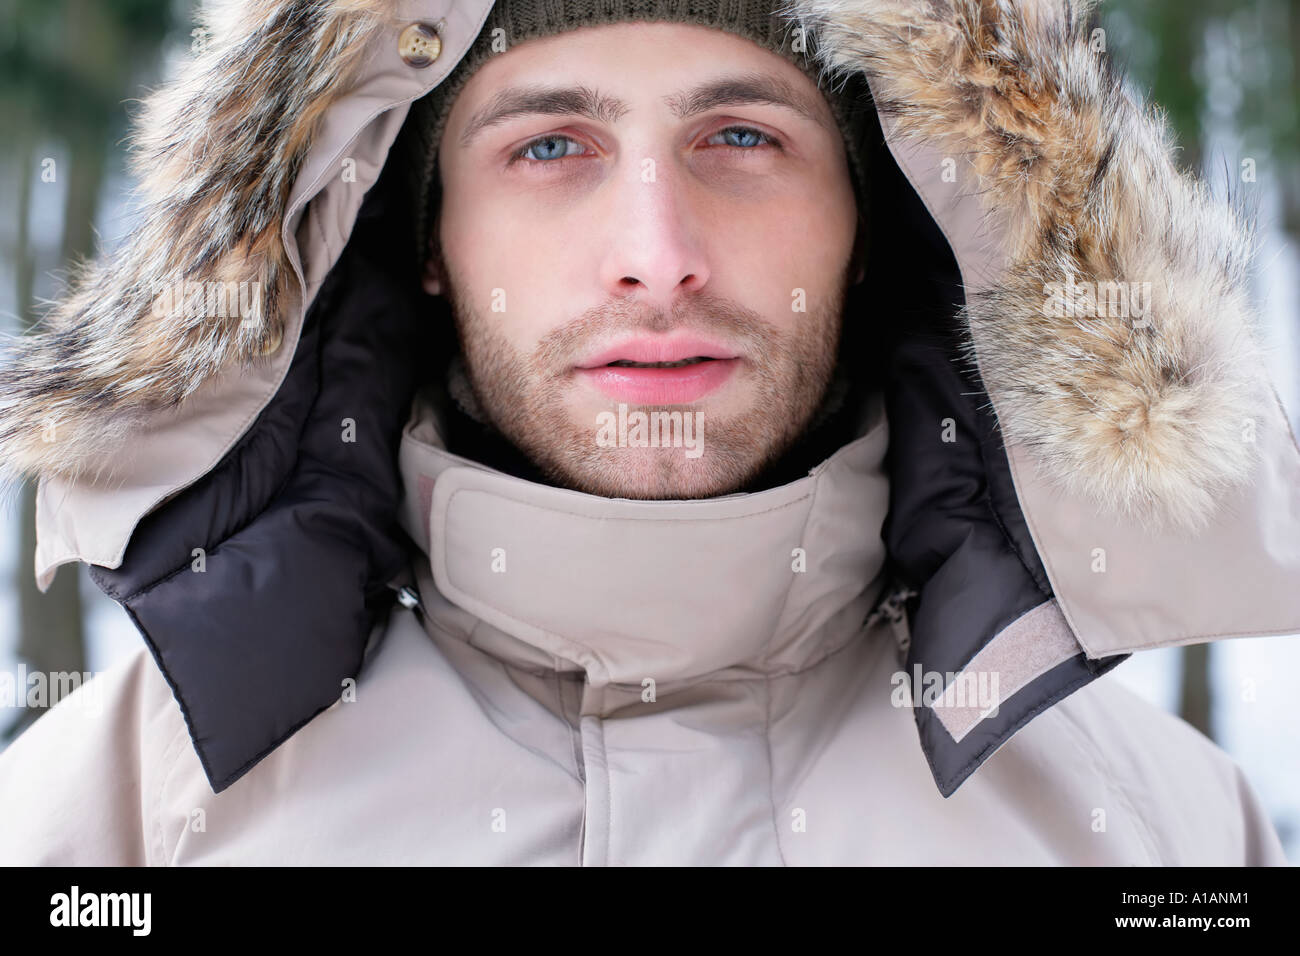 Homme dans un manteau avec capuche fourrure Photo Stock - Alamy